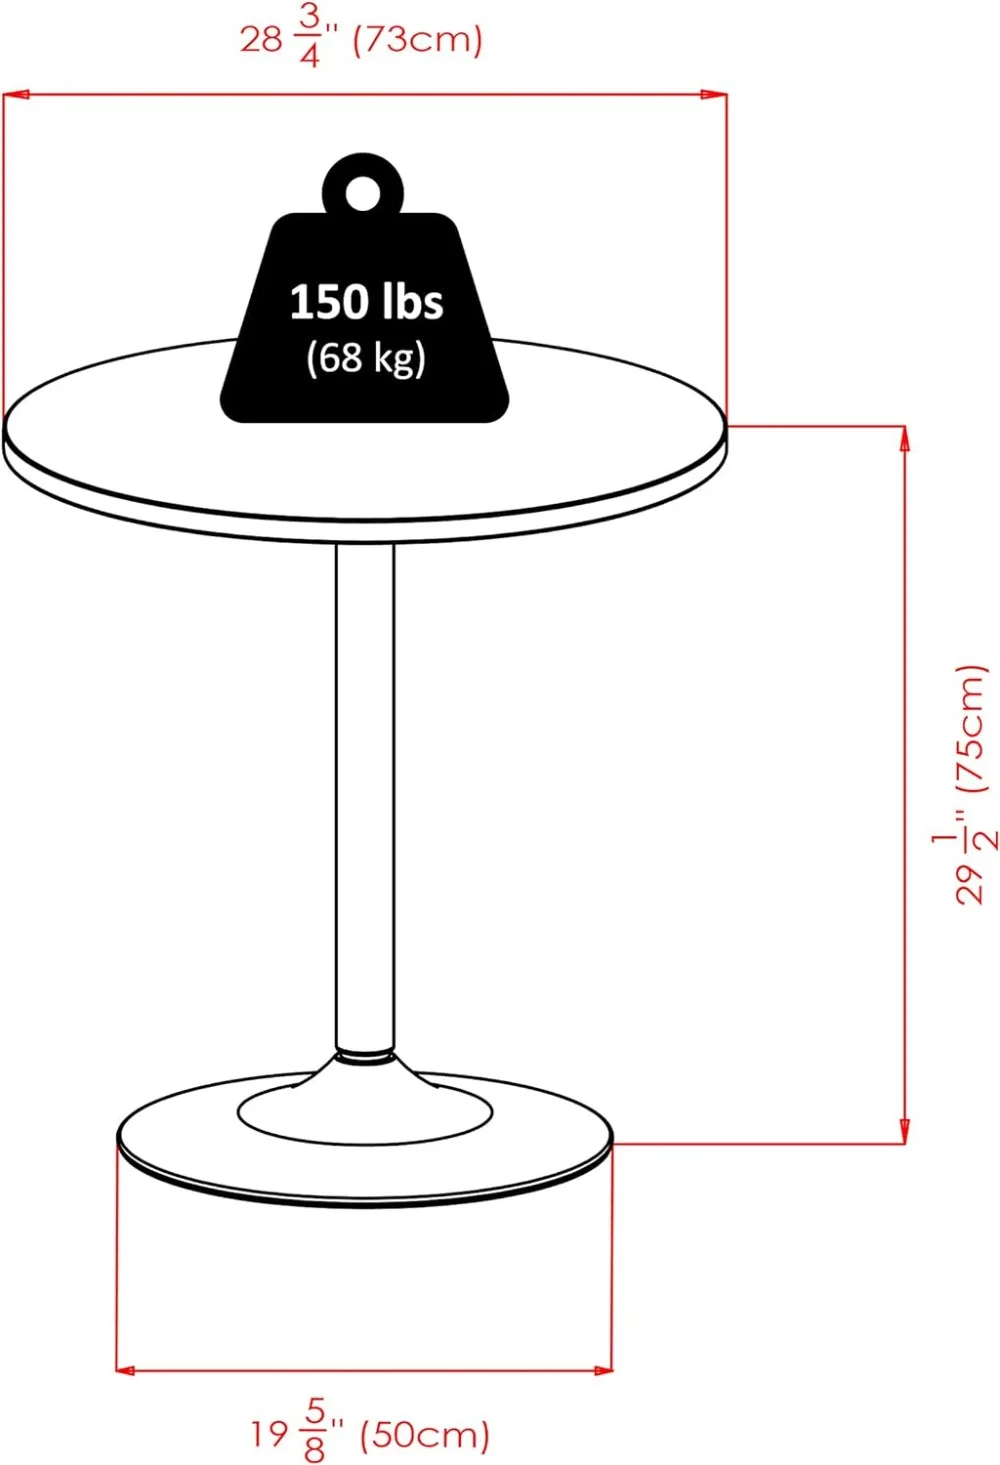 طاولة طعام مستديرة من نوع Winsome Spectrum MDF ، سوداء ، 29 "x" x "x" ،